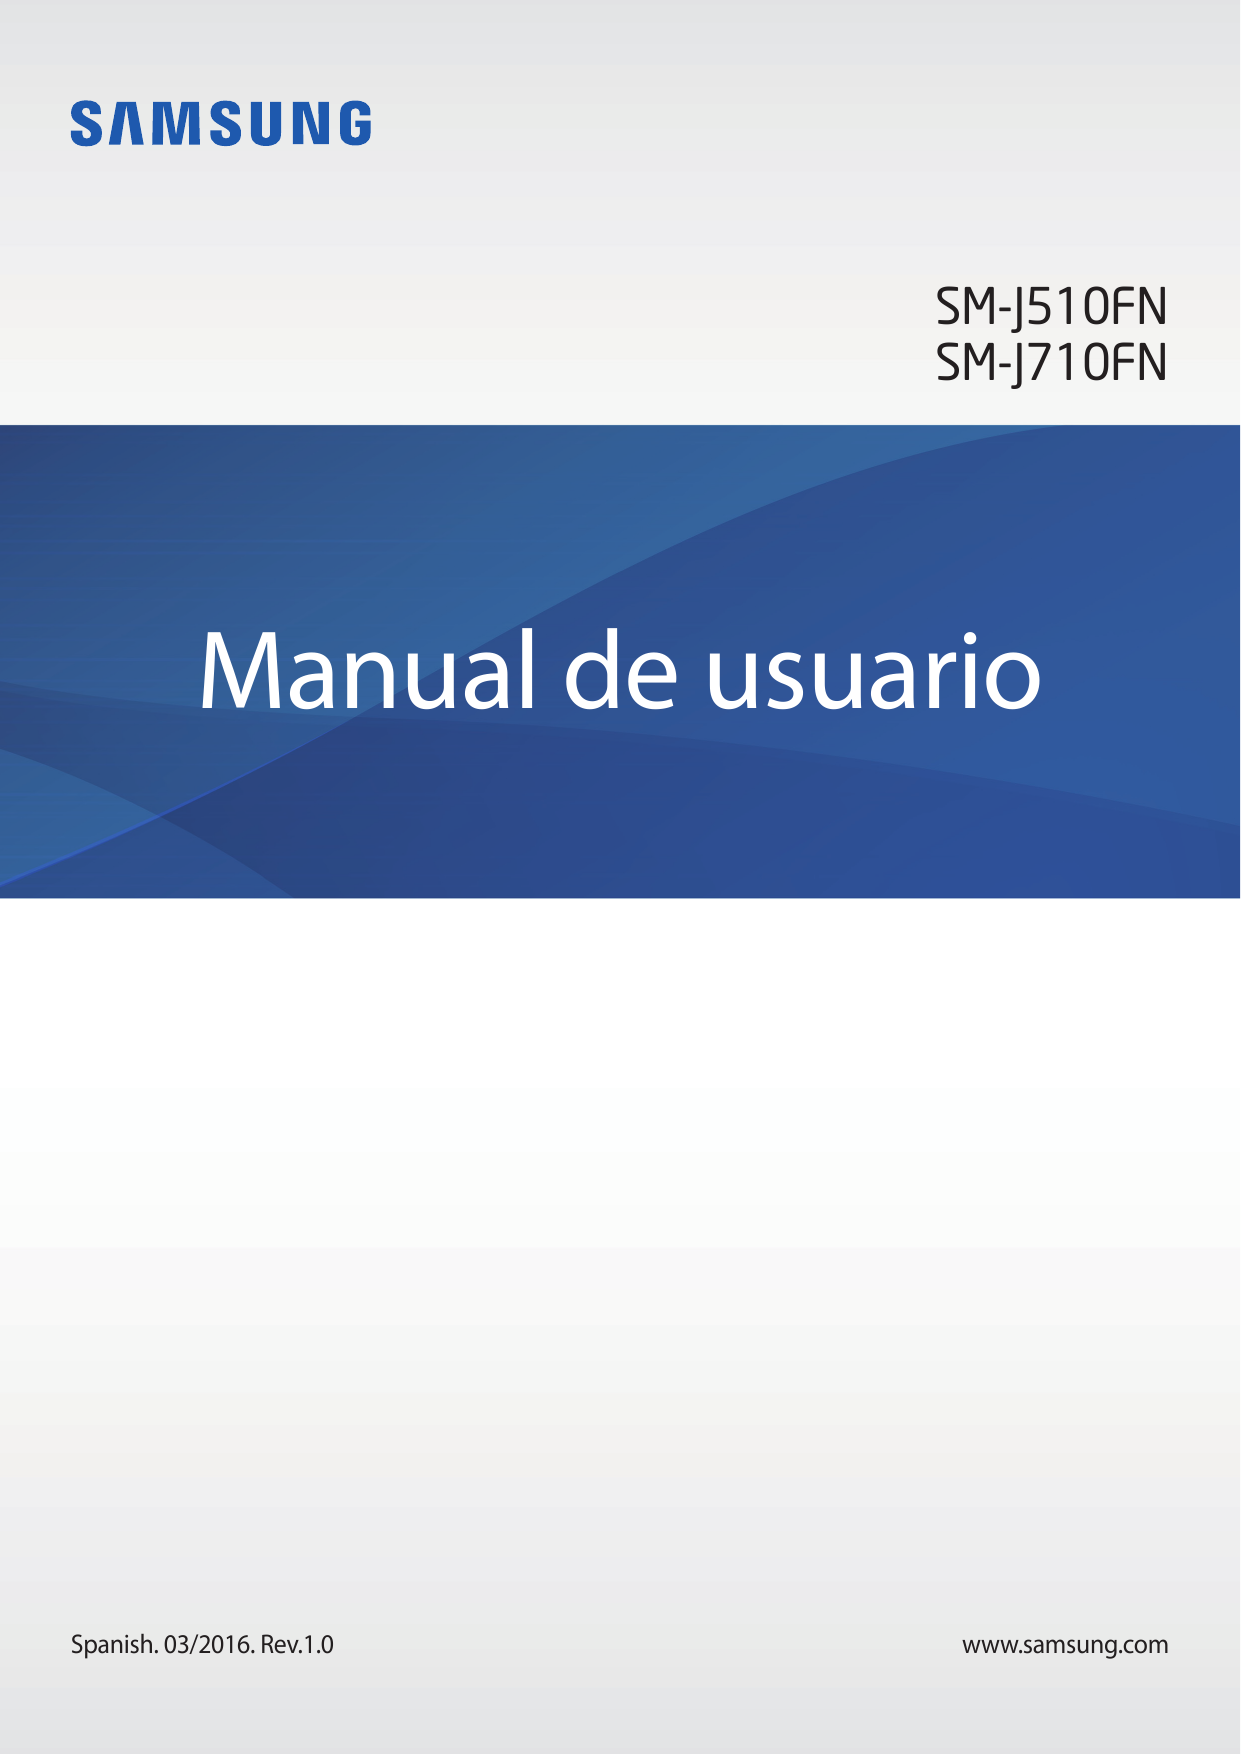 SM-J510FNSM-J710FNManual de usuarioSpanish. 03/2016. Rev.1.0www.samsung.com